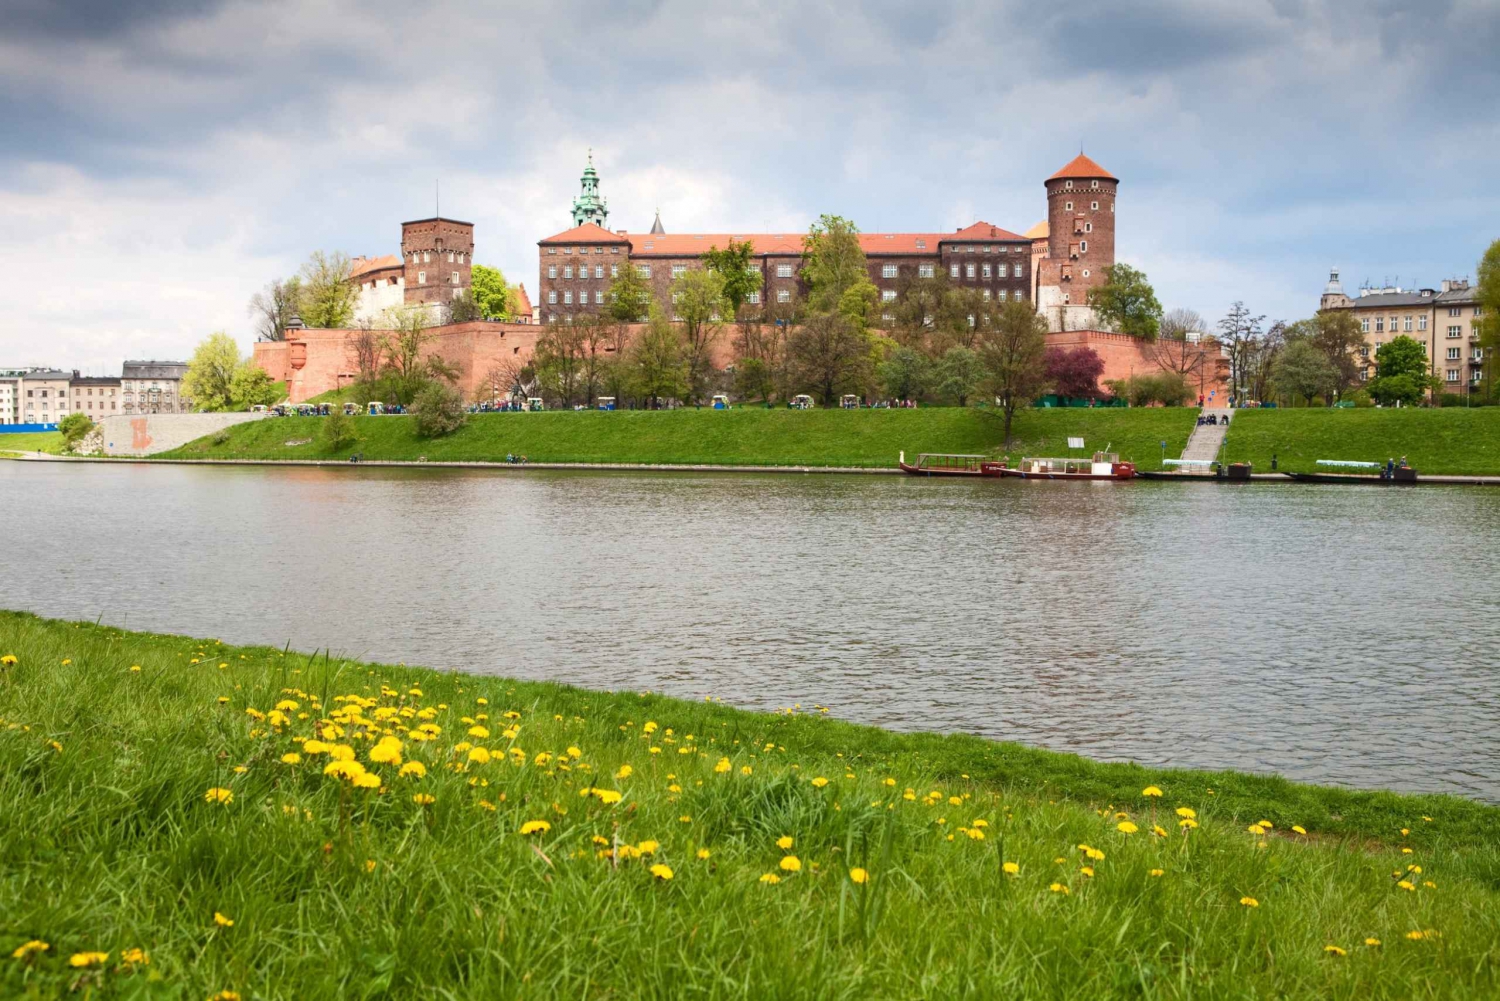 Krakau: Schloss Wawel, Jüdisches Viertel, Wieliczka, Auschwitz